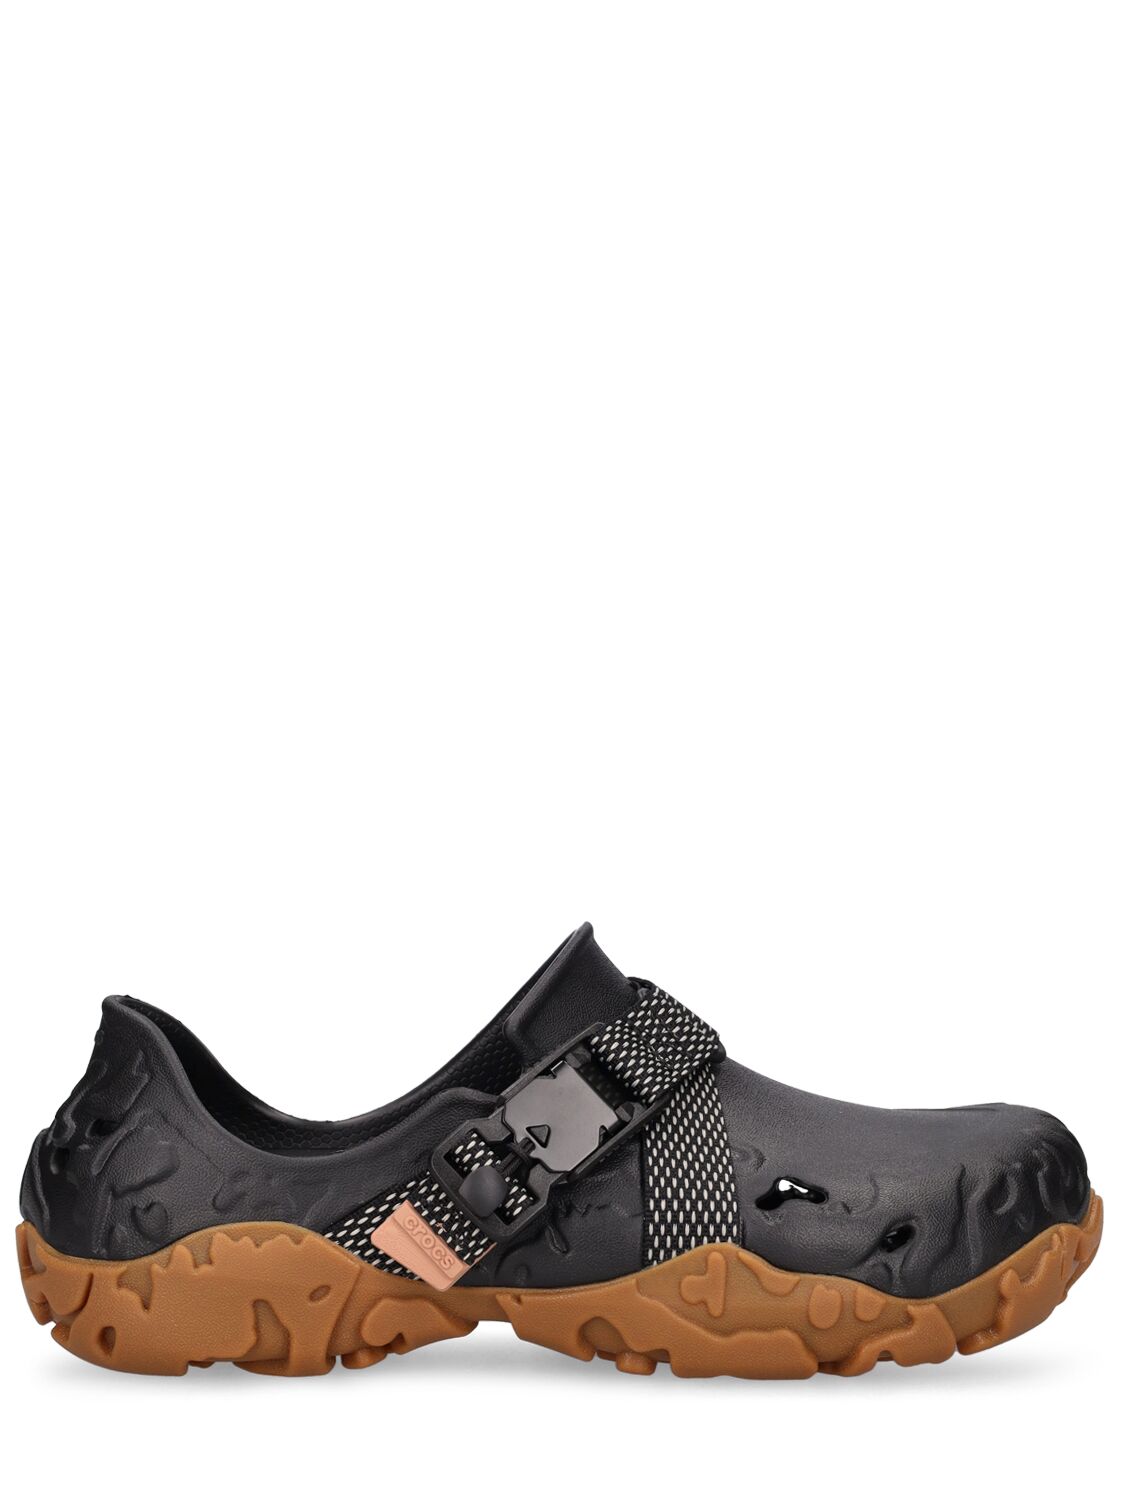 Crocs Atlas Shoes In Black,brown